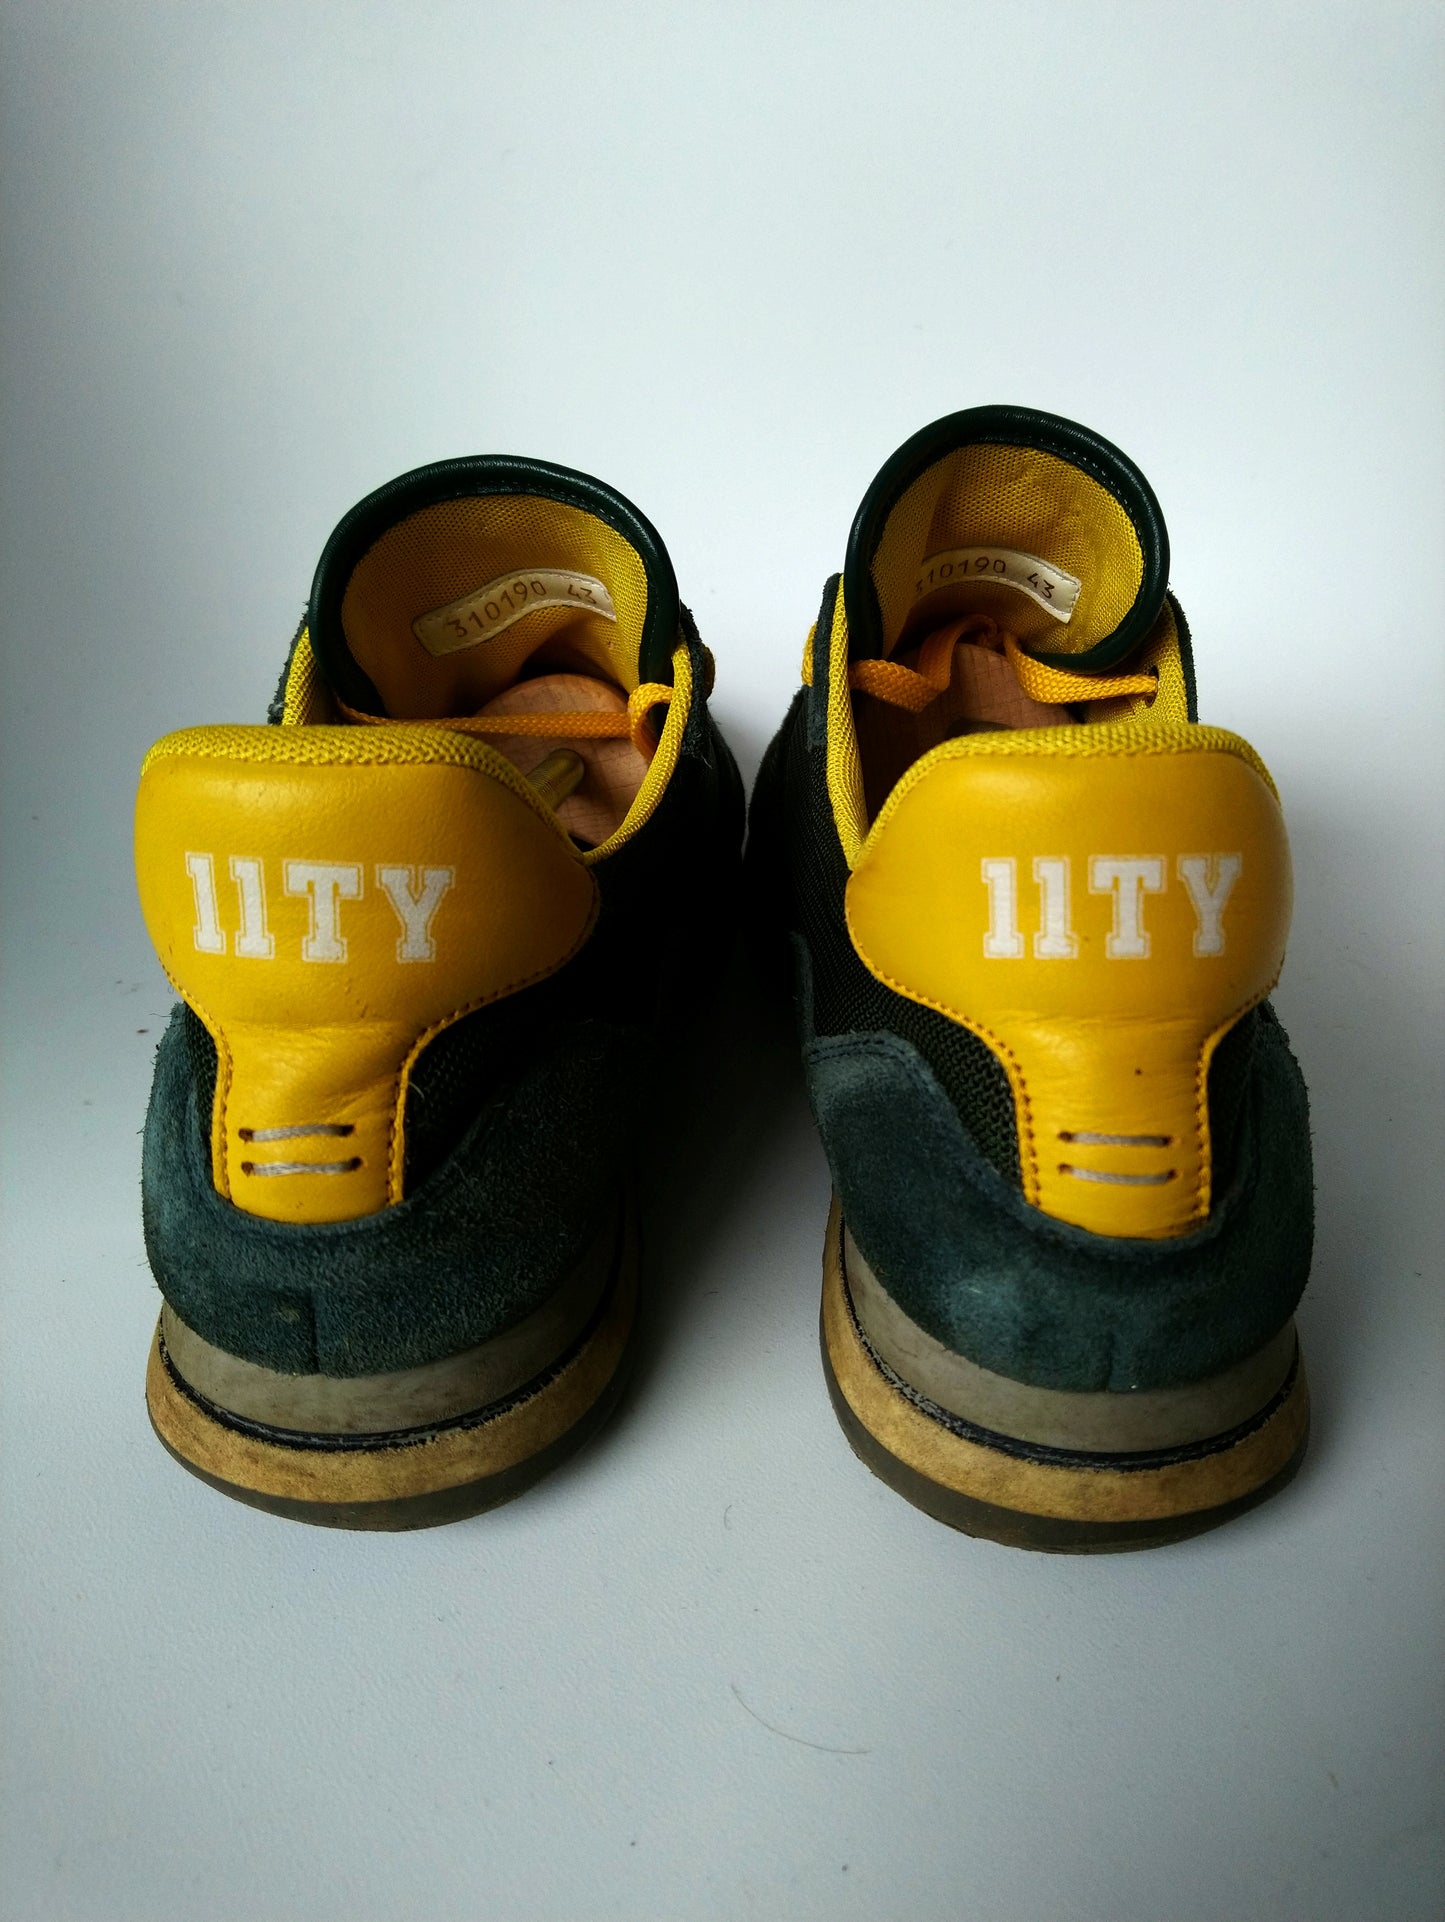 Sneakers Eleventy / 11ty. Couleur jaune vert foncé. Taille 43.